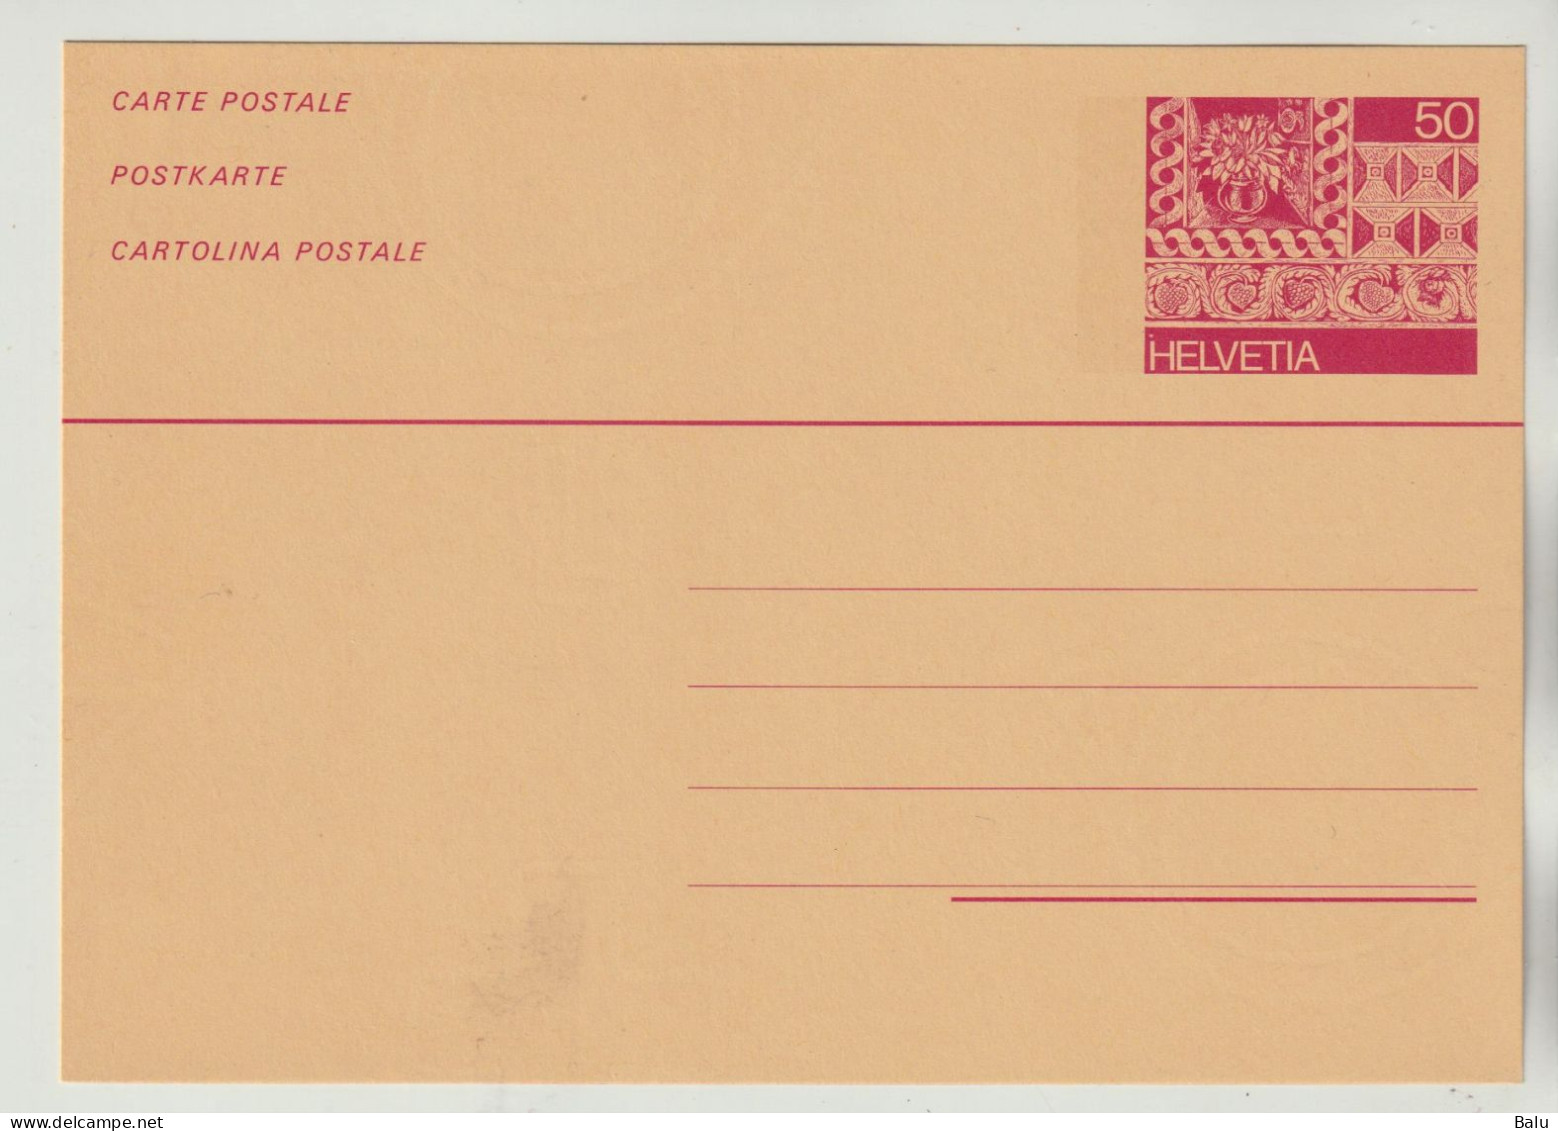 Schweiz Ganzsache 1984 Helvetia 50 Rp. Postkarte Fassadenmalerei, NEU, Siehe 2 Scans - Stamped Stationery